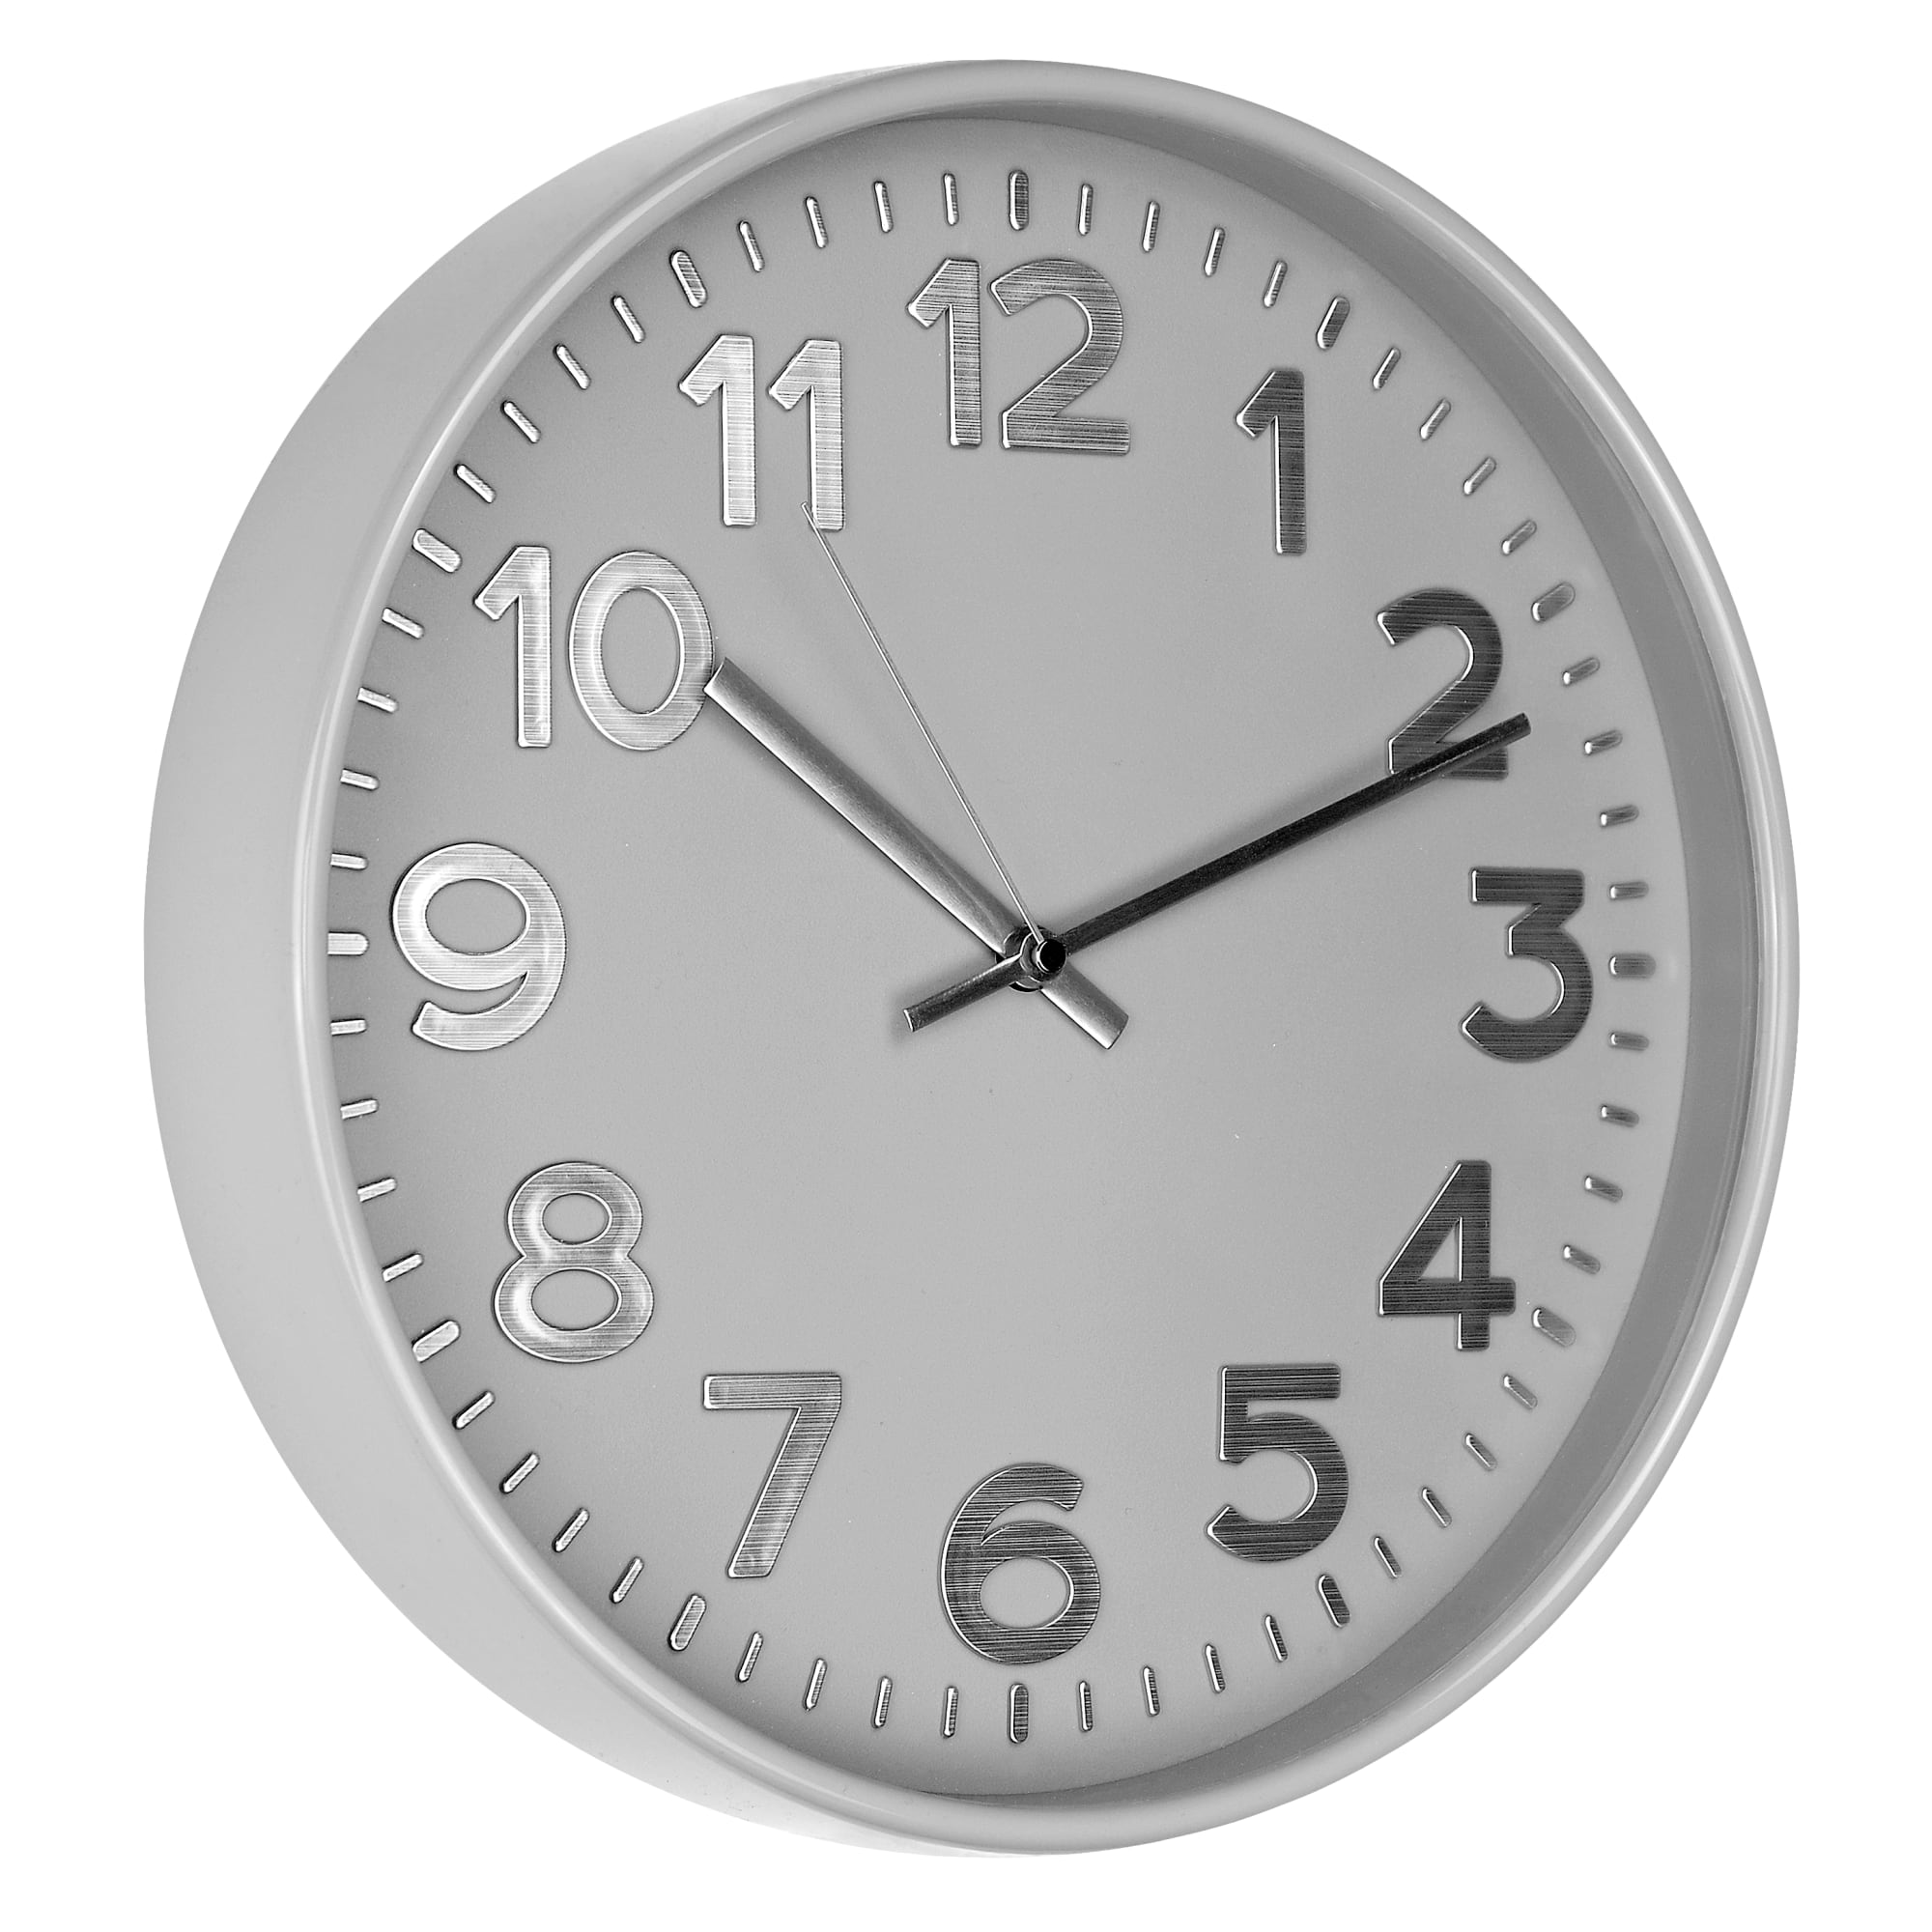 Настенные часы troykatime. Настенные часы troykatime, d30 см, пластик, цвет серый. Настенные часы troykatime, 30.000 см х 30.000 см. Настенные часы troykatime, 30 см. Настенные часы troykatime, d30 см, пластик, цвет серый 84759066.